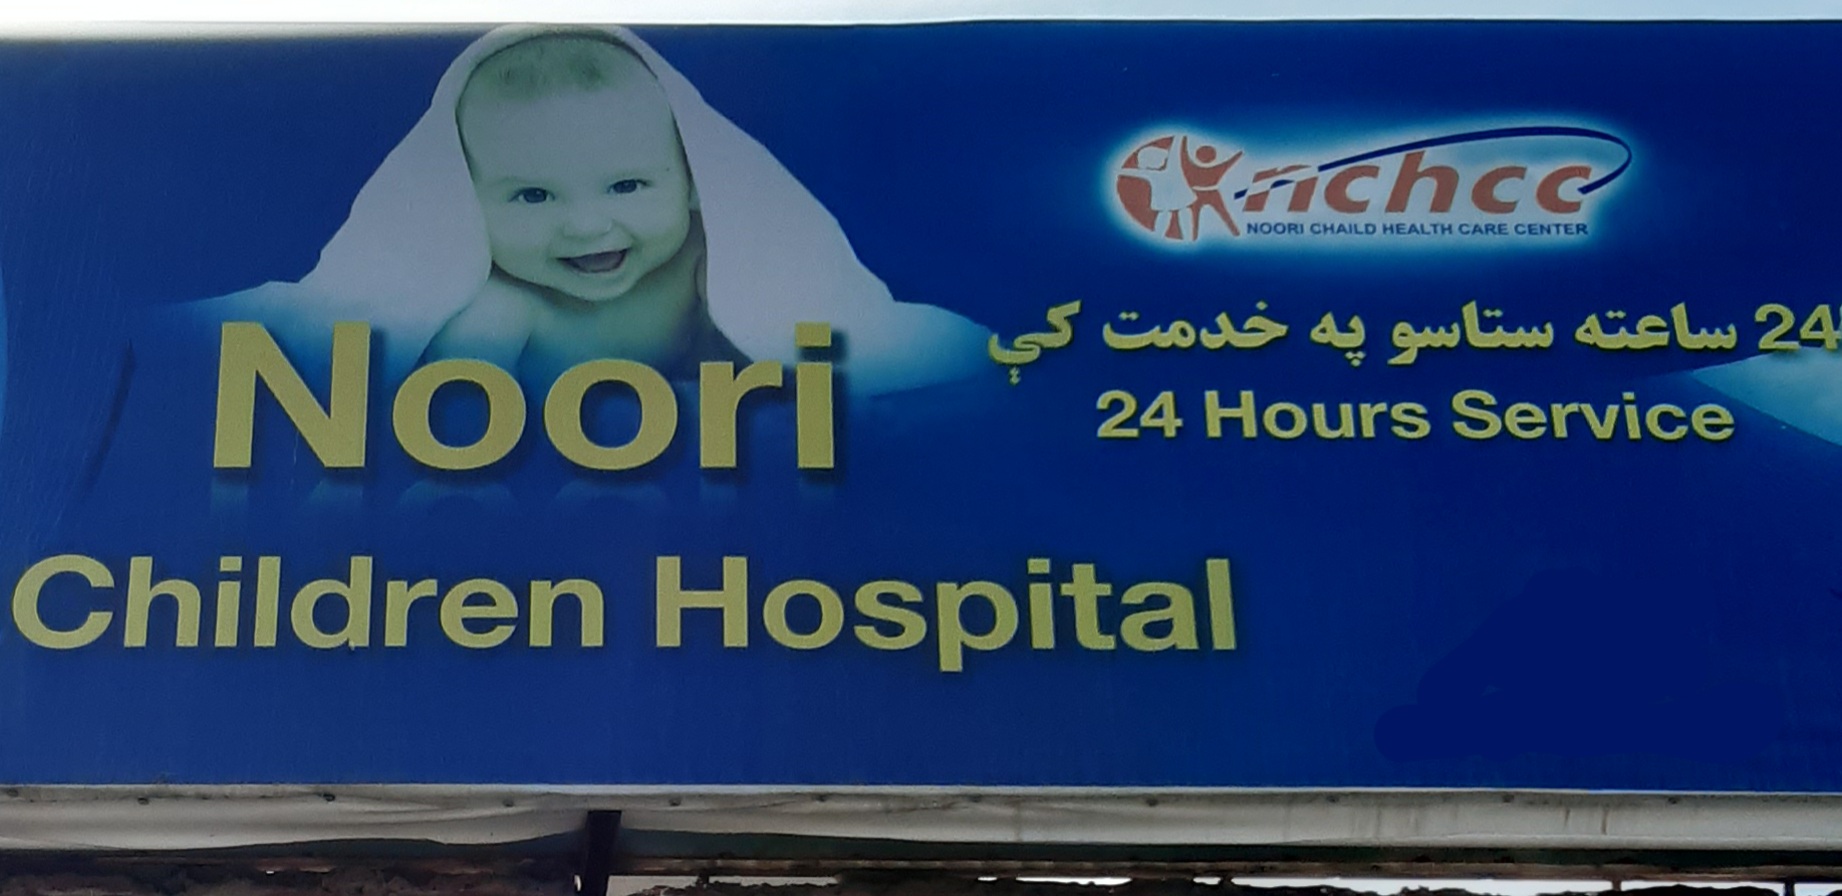 Noori Children Hospital